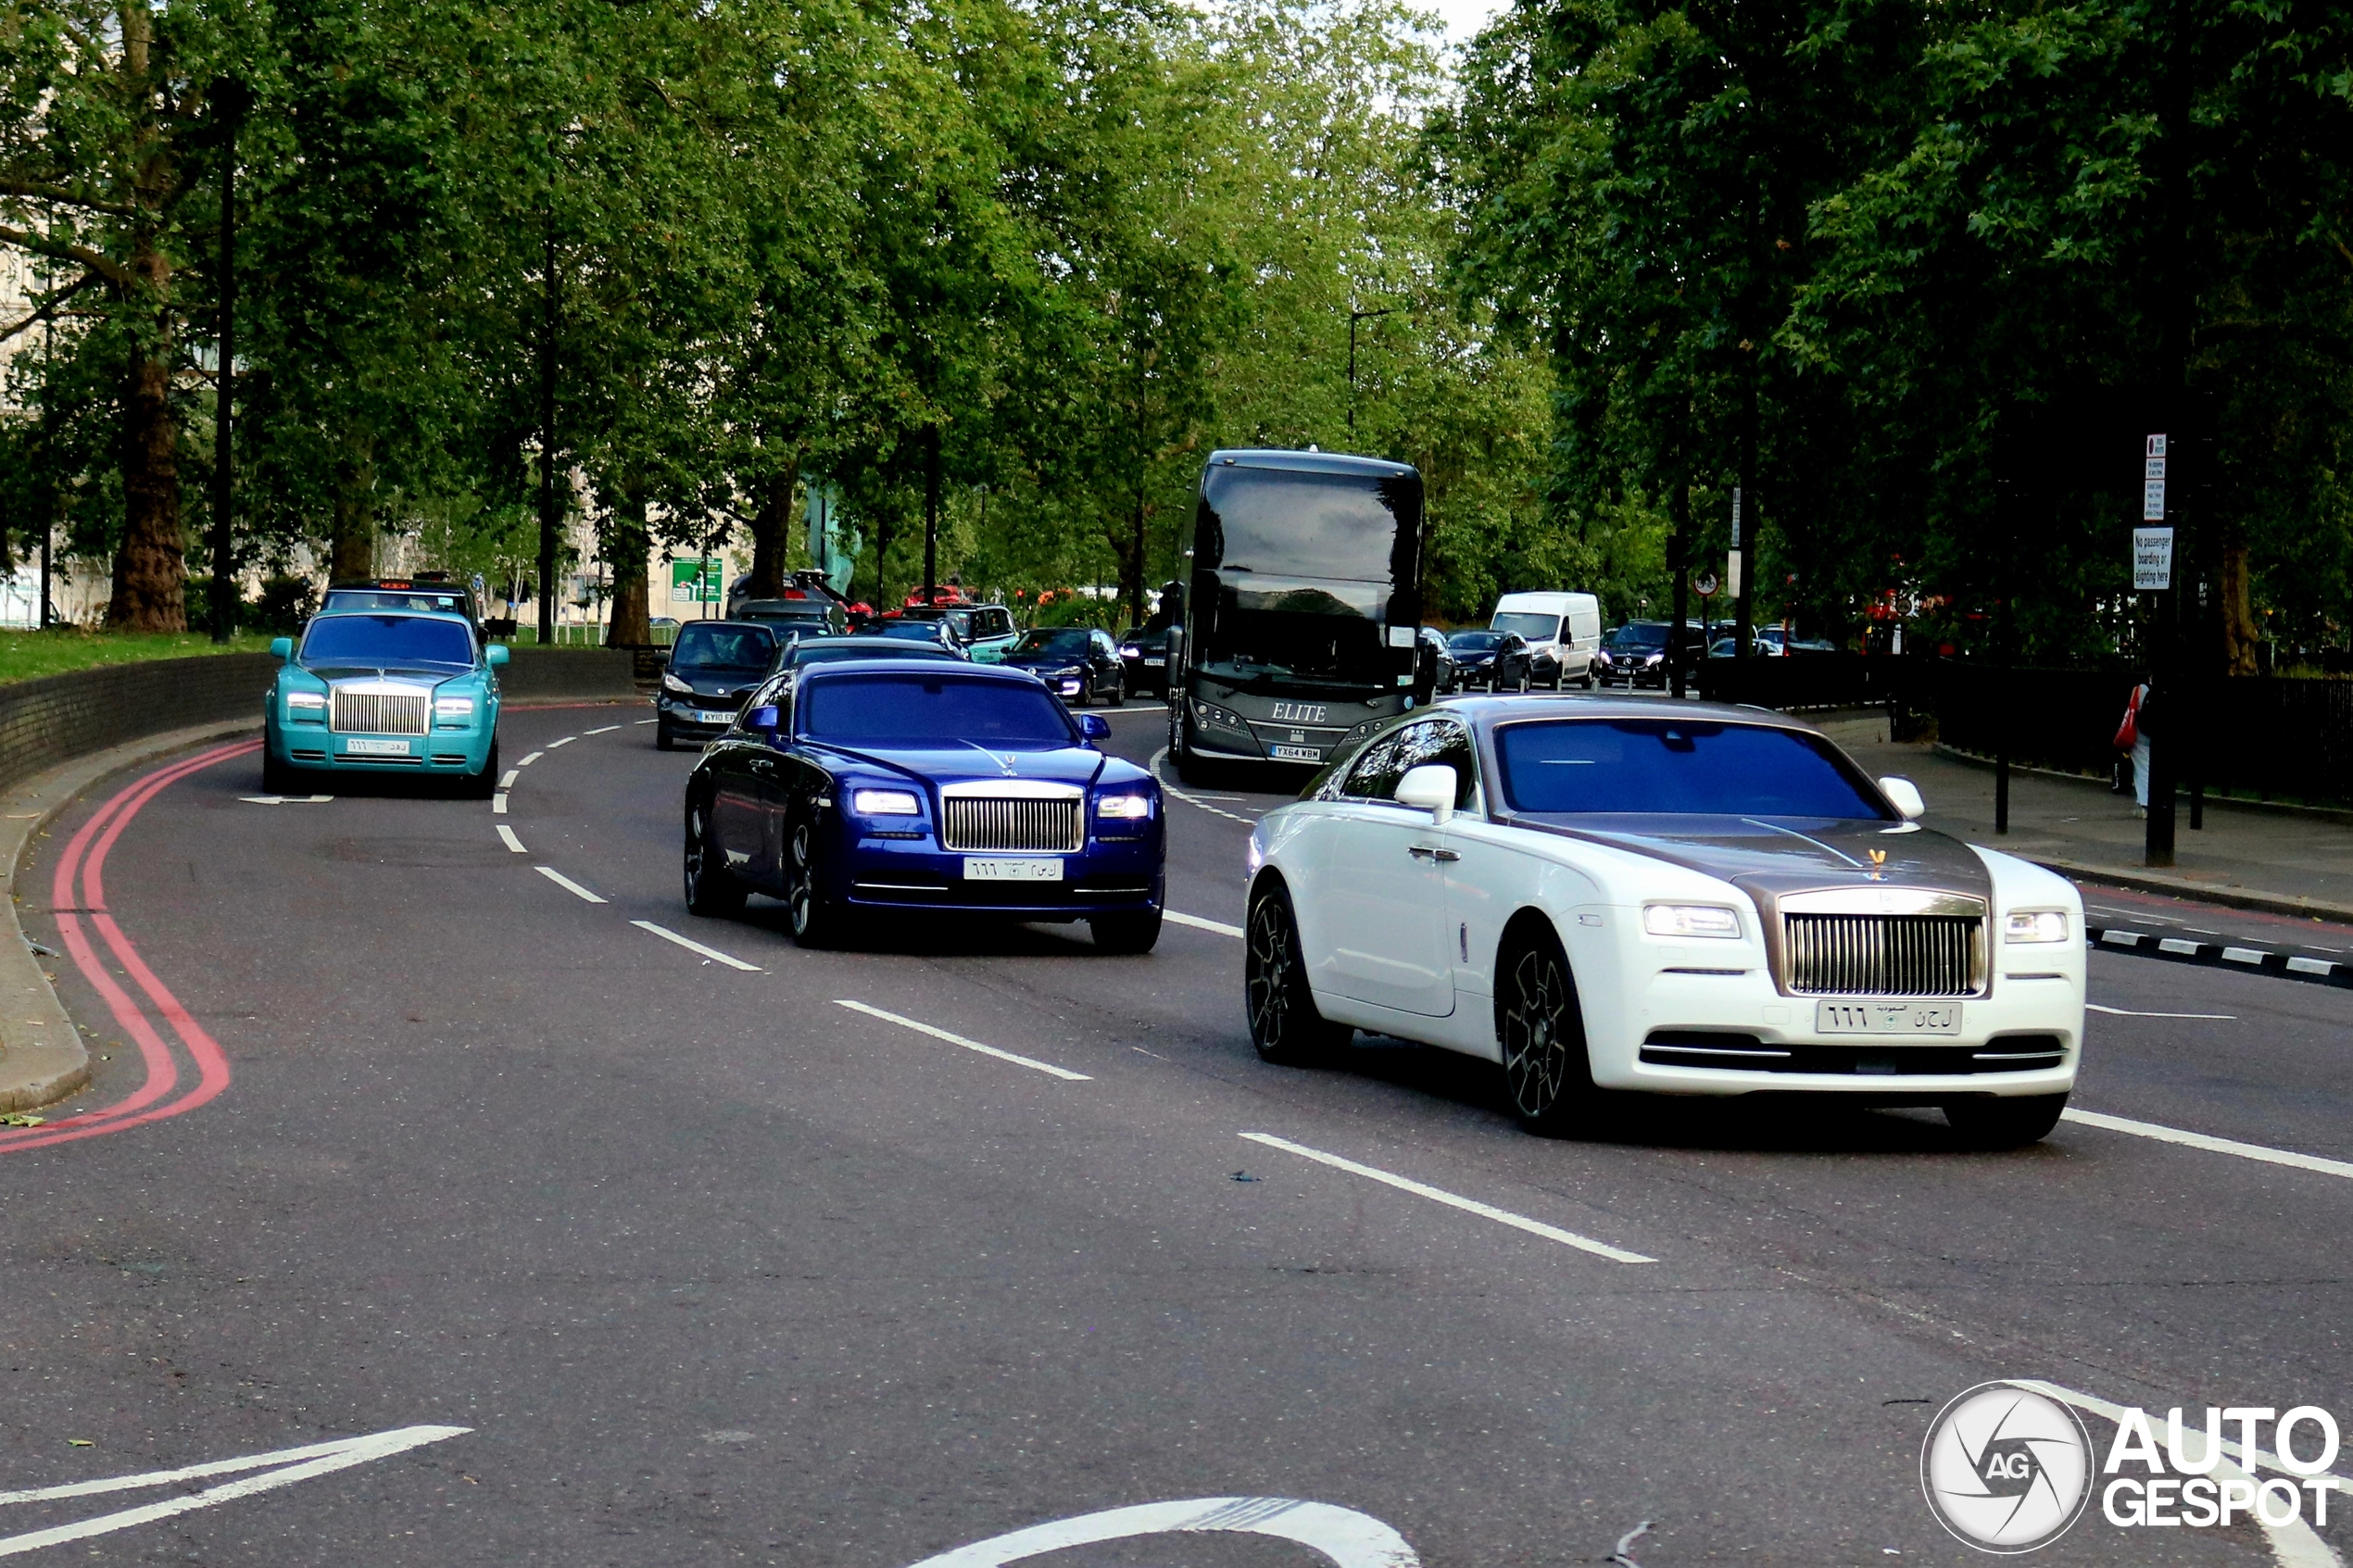 Rolls-Royce lijkt in Londen alledaags vervoermiddel